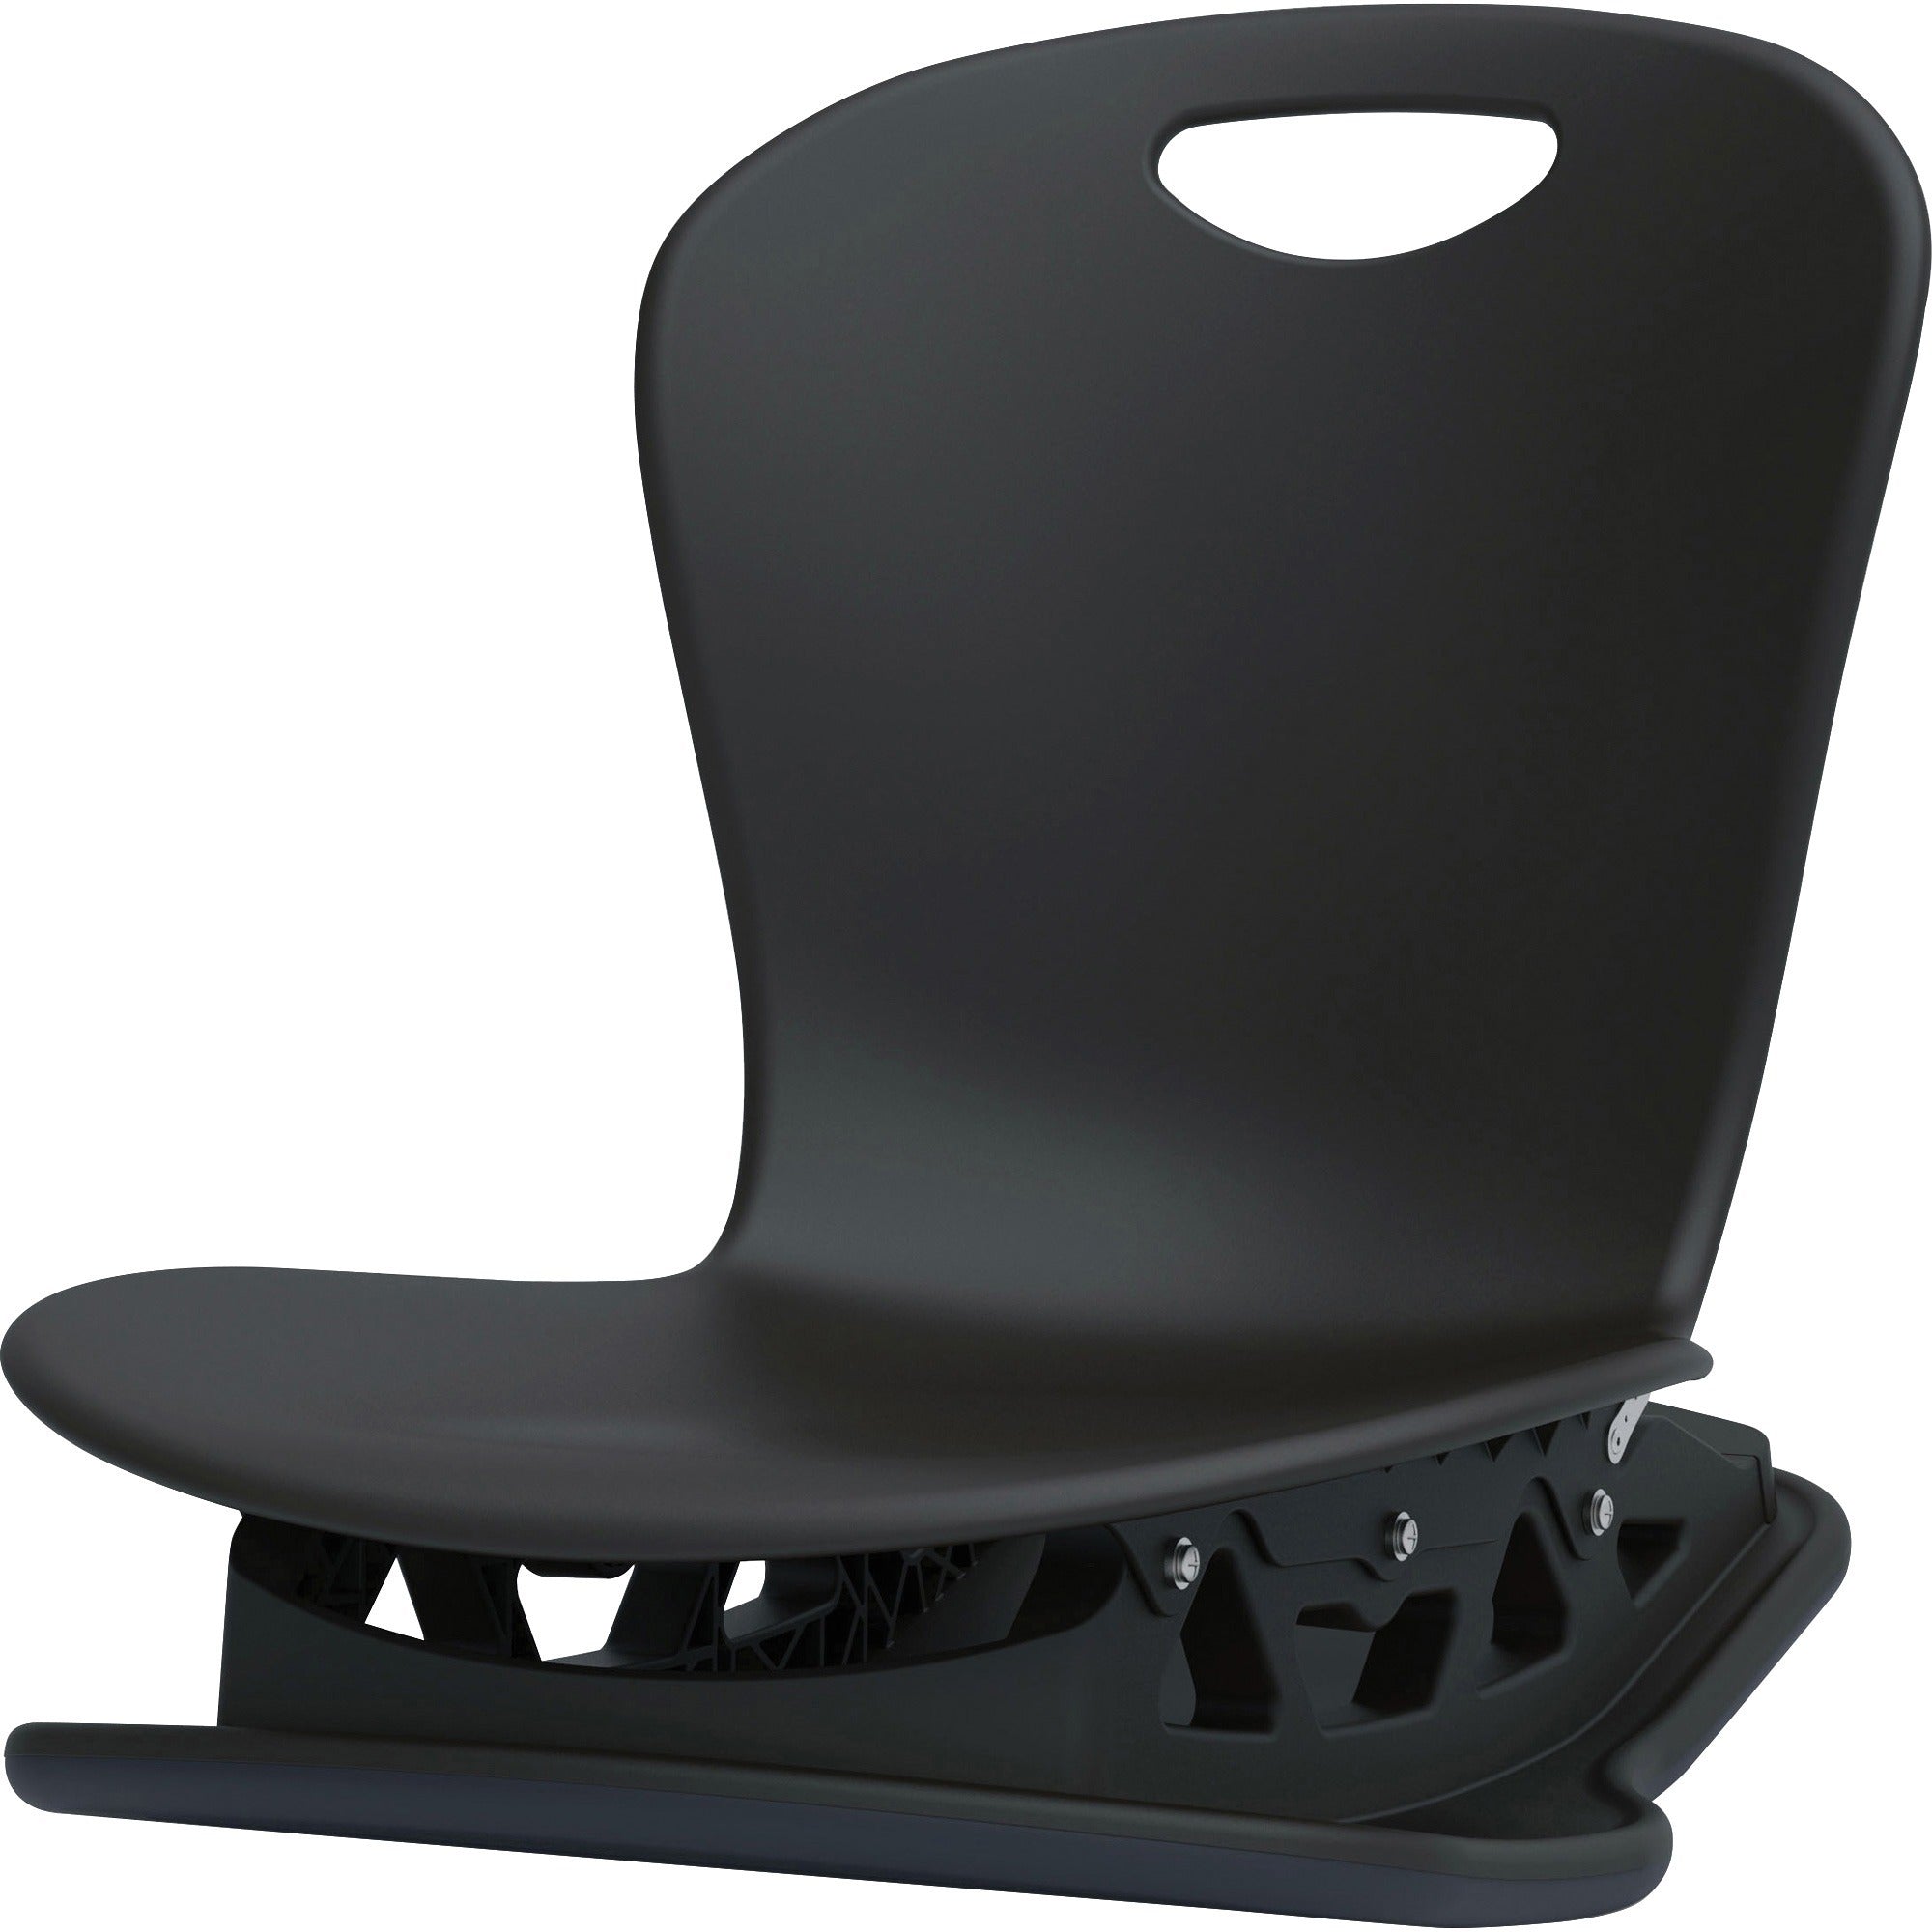 virco-zuma-floor-rocker-chair-black-1-each_virzflrock18blk - 1